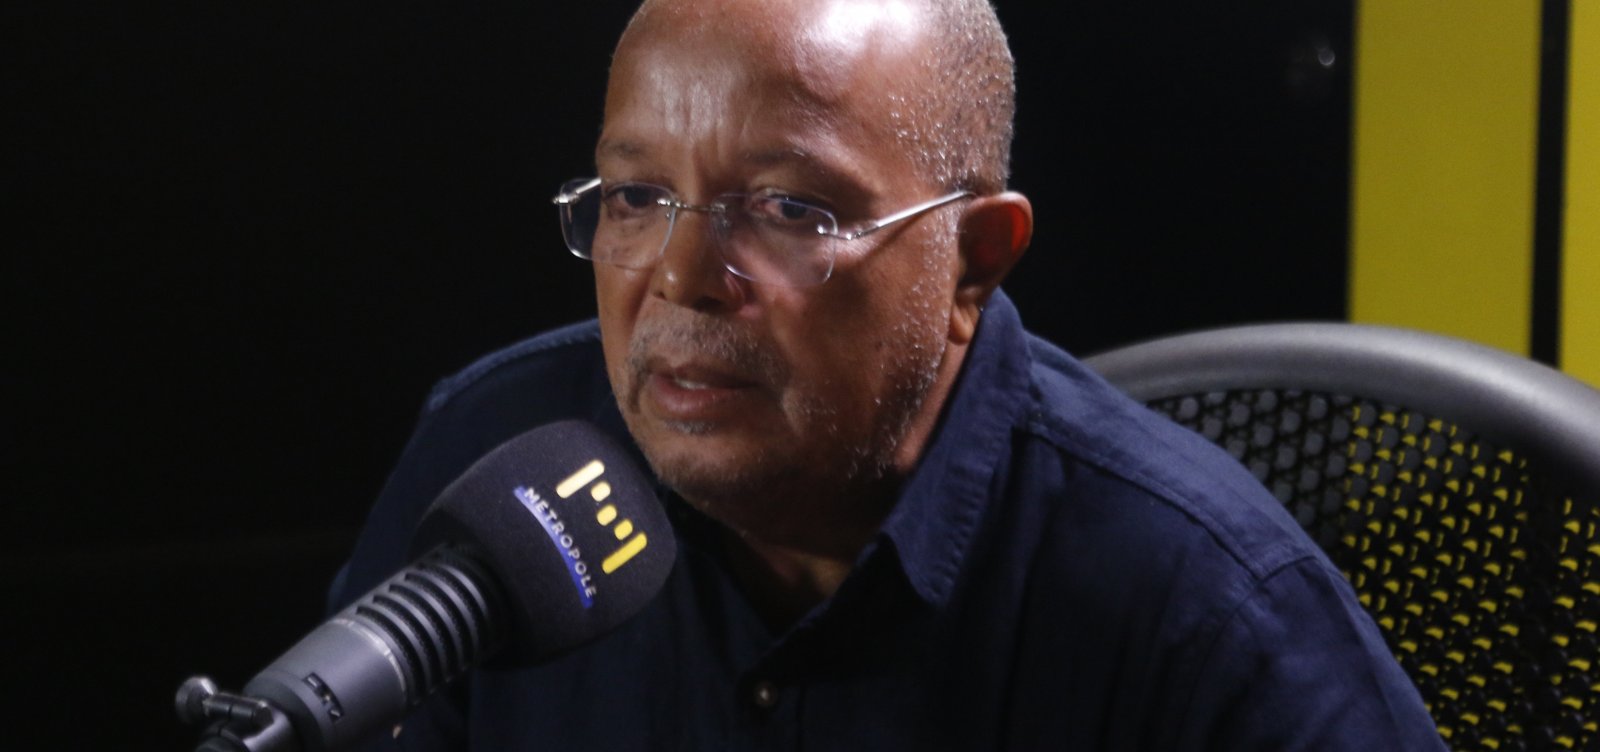 Na Sabatina do JC, Luiz Carlos Suíca revela que alguns políticos do partido evitam "falar com ele"